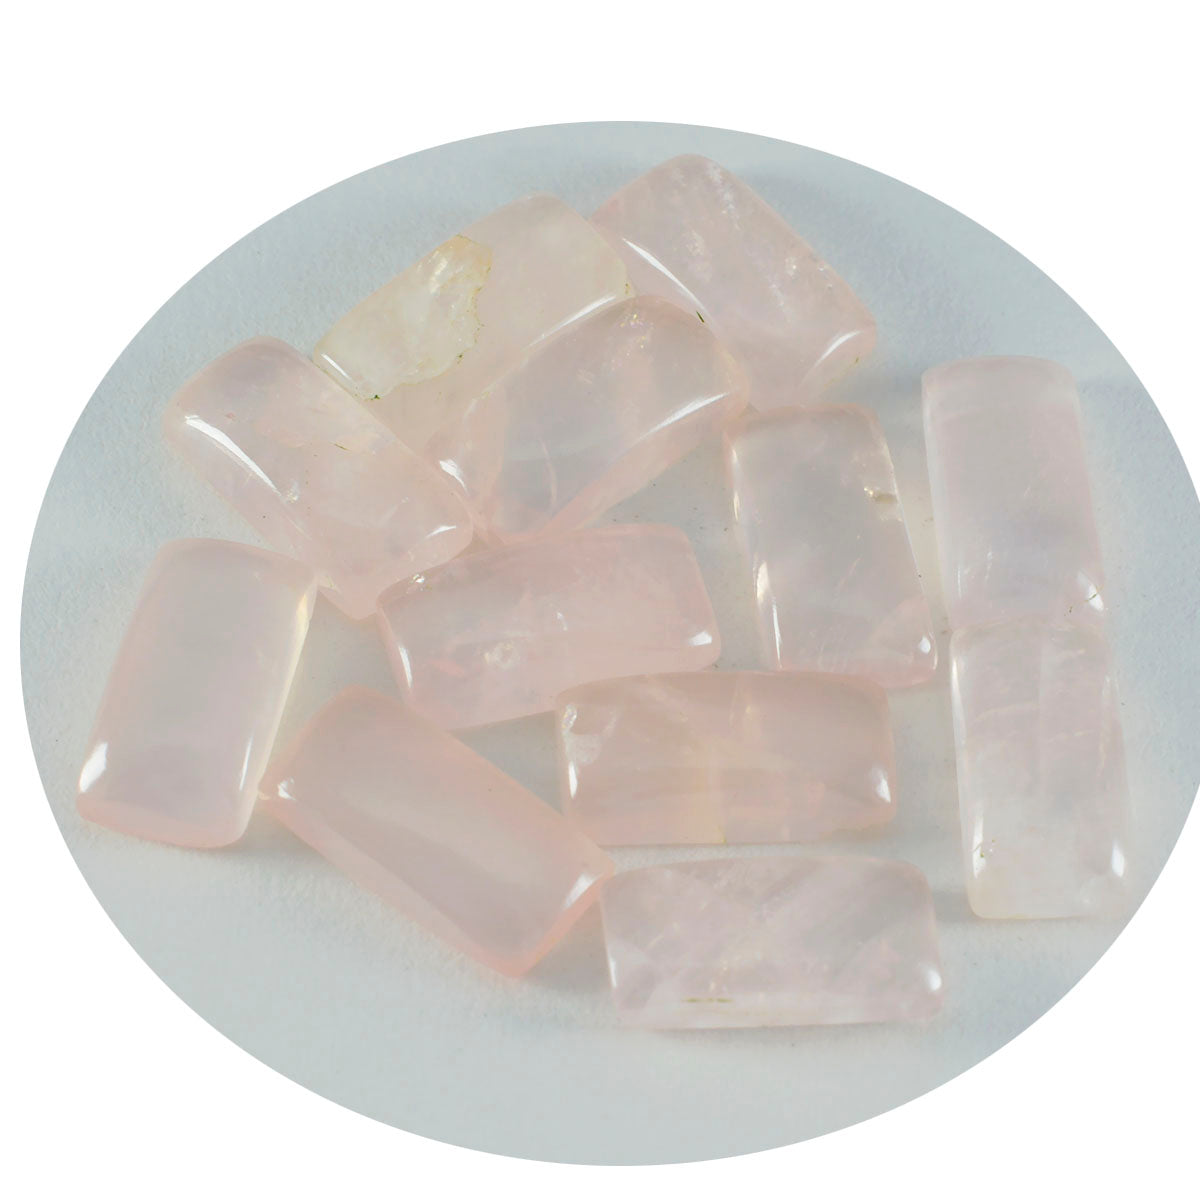 Riyogems 1pc cabochon de quartz rose rose 6x12mm forme de baguett pierres précieuses en vrac de qualité mignonne